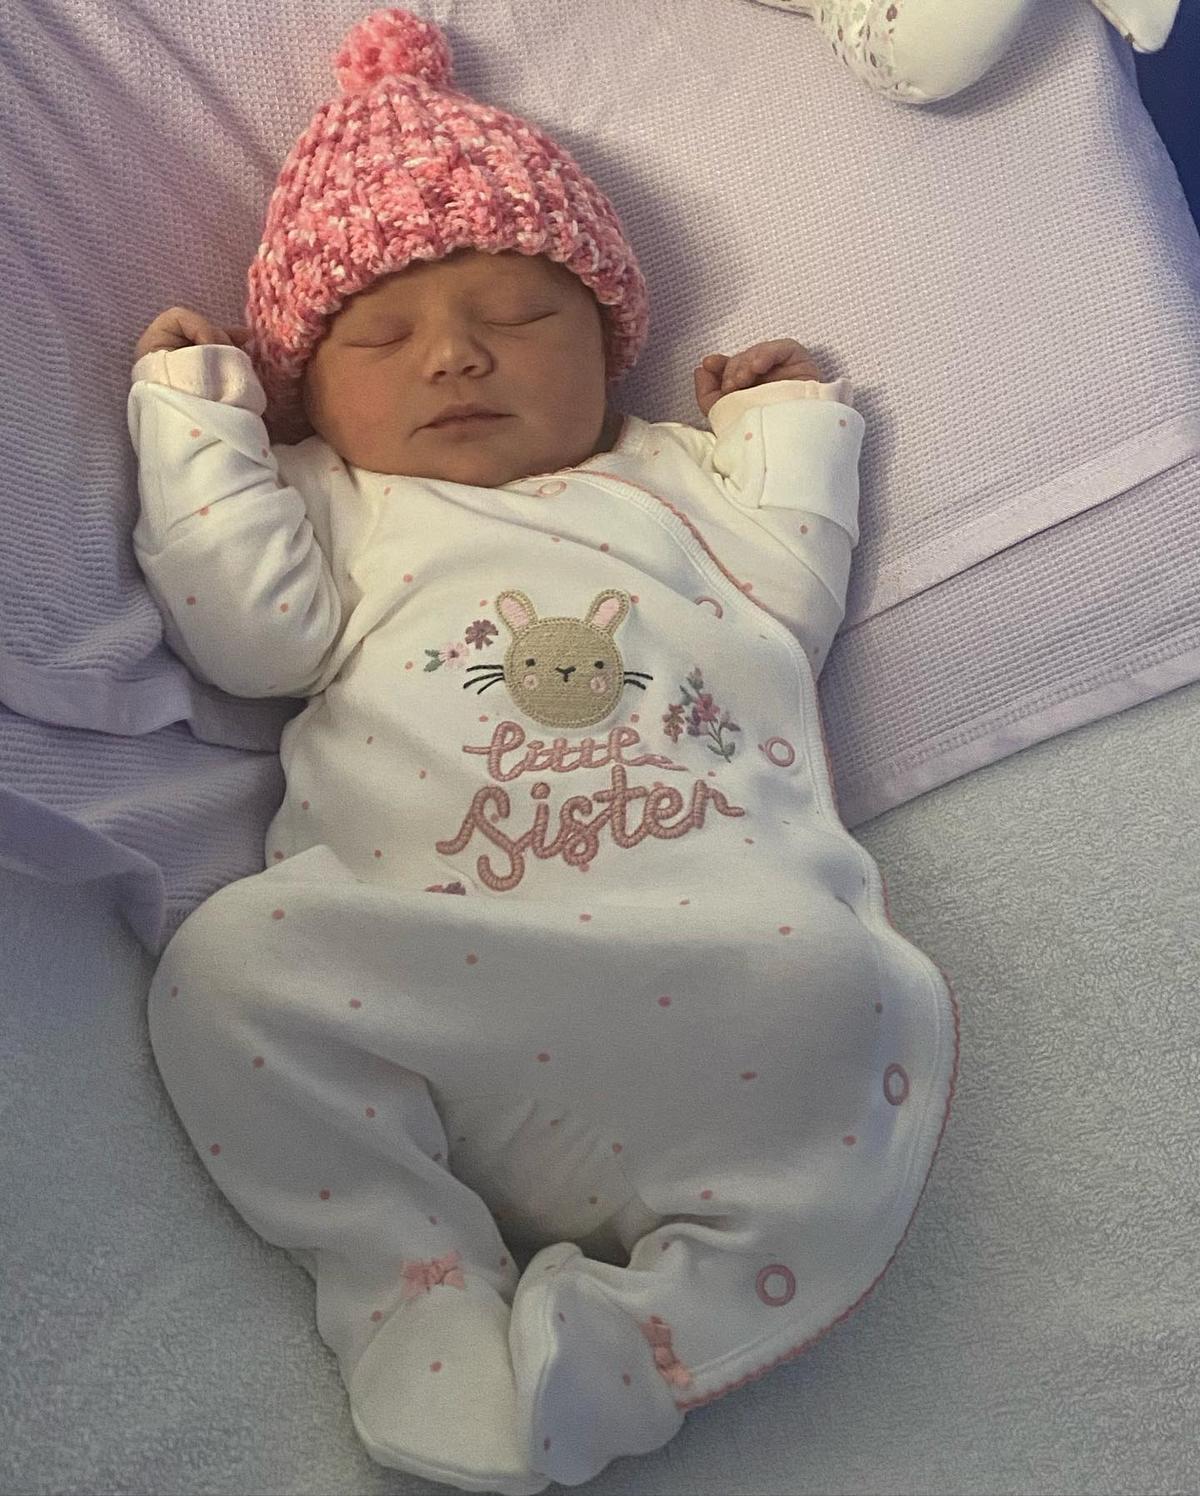 Baby Amelia (Courtesy of <a href="https://www.instagram.com/lucygemmaogrady/">Lucy Watts</a>)